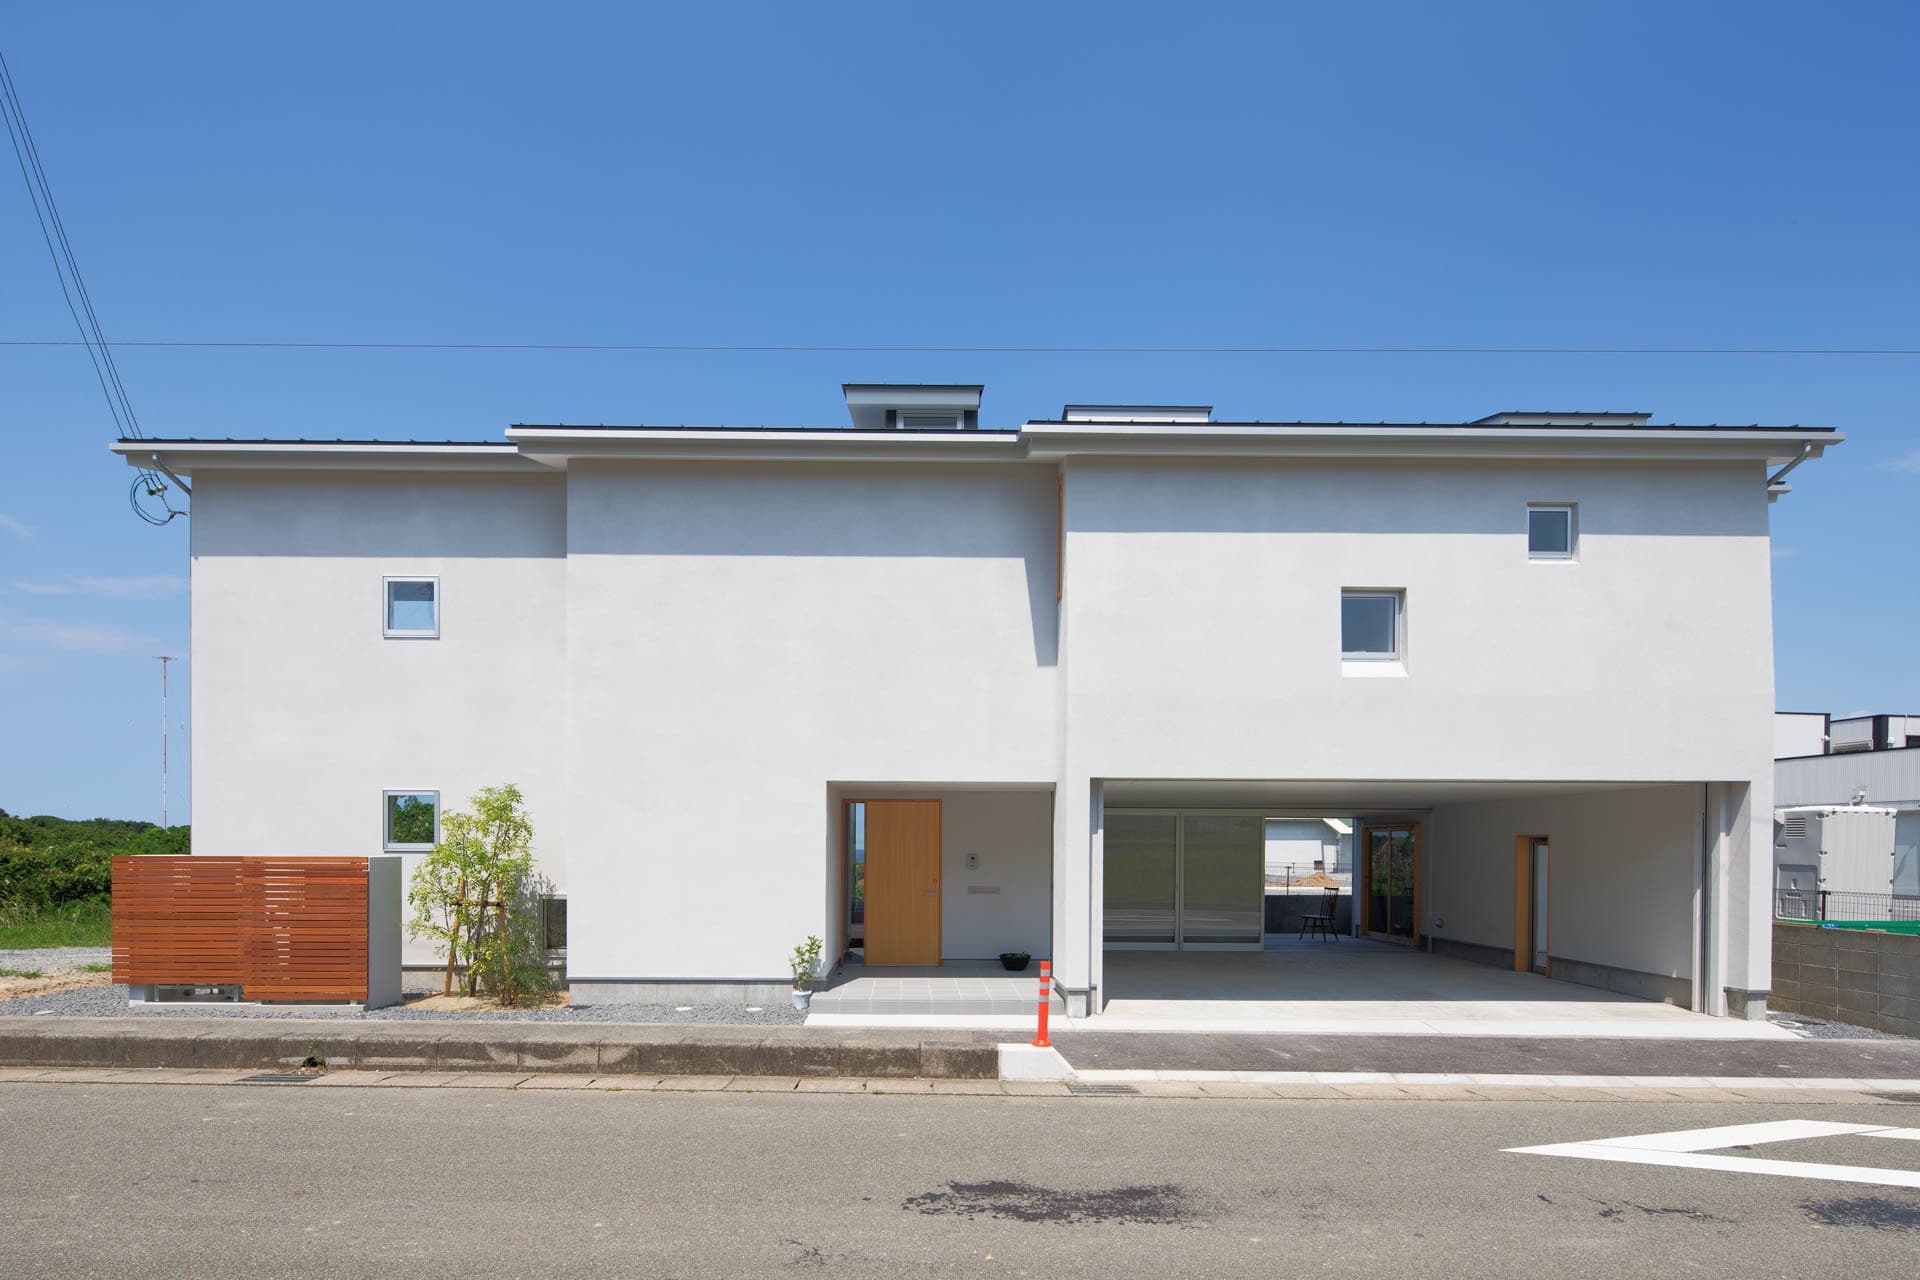 大阪の建築家・中平勝が設計した２階リビングダイニングの眺めの良い住宅です